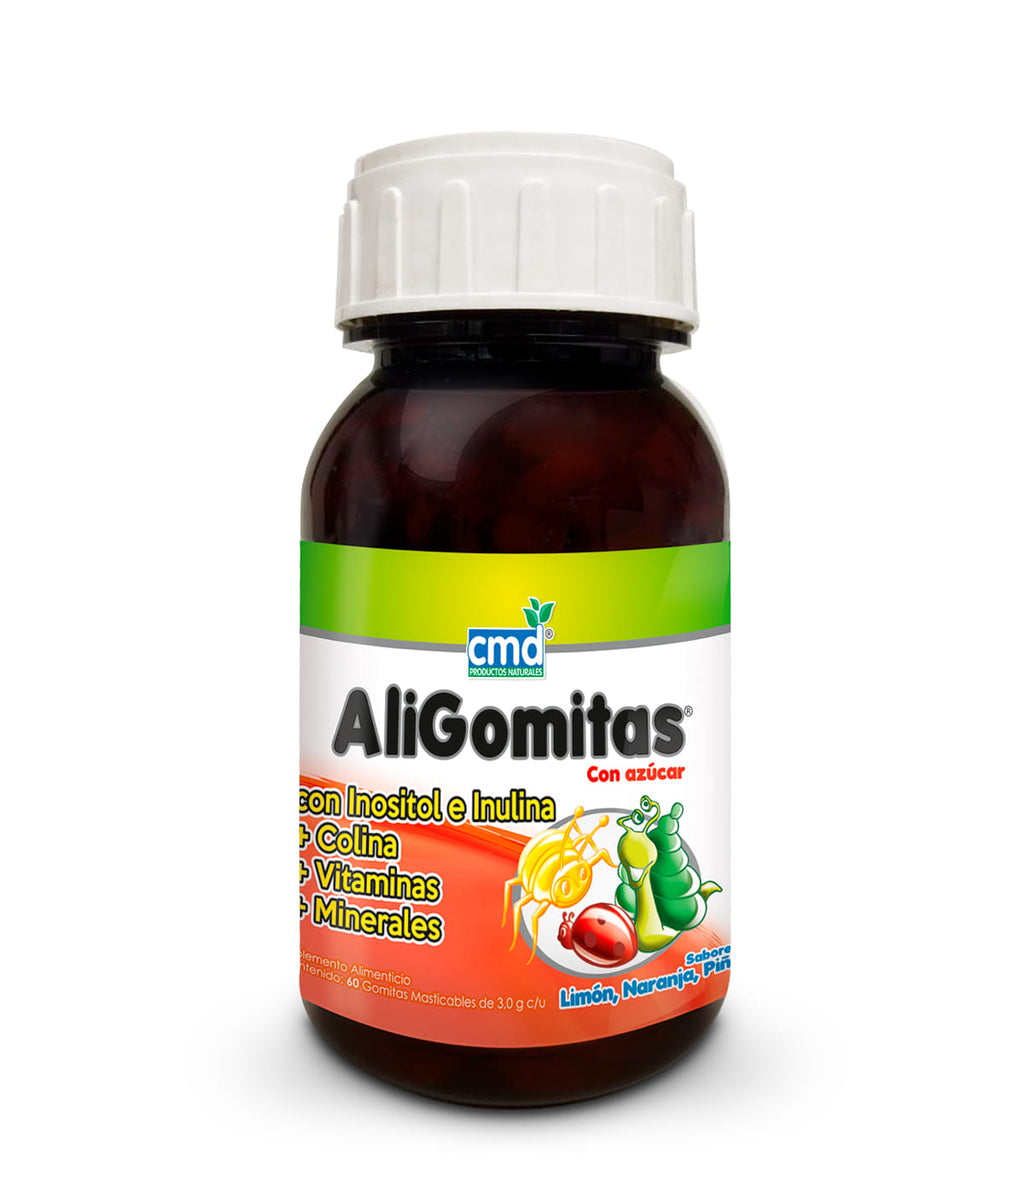 ALIGOMITAS Inositol, Inulina, Colina, Vitaminas y minerales con 60 gomitas  masticables sabor Limón, Naranja y Piña infantil.